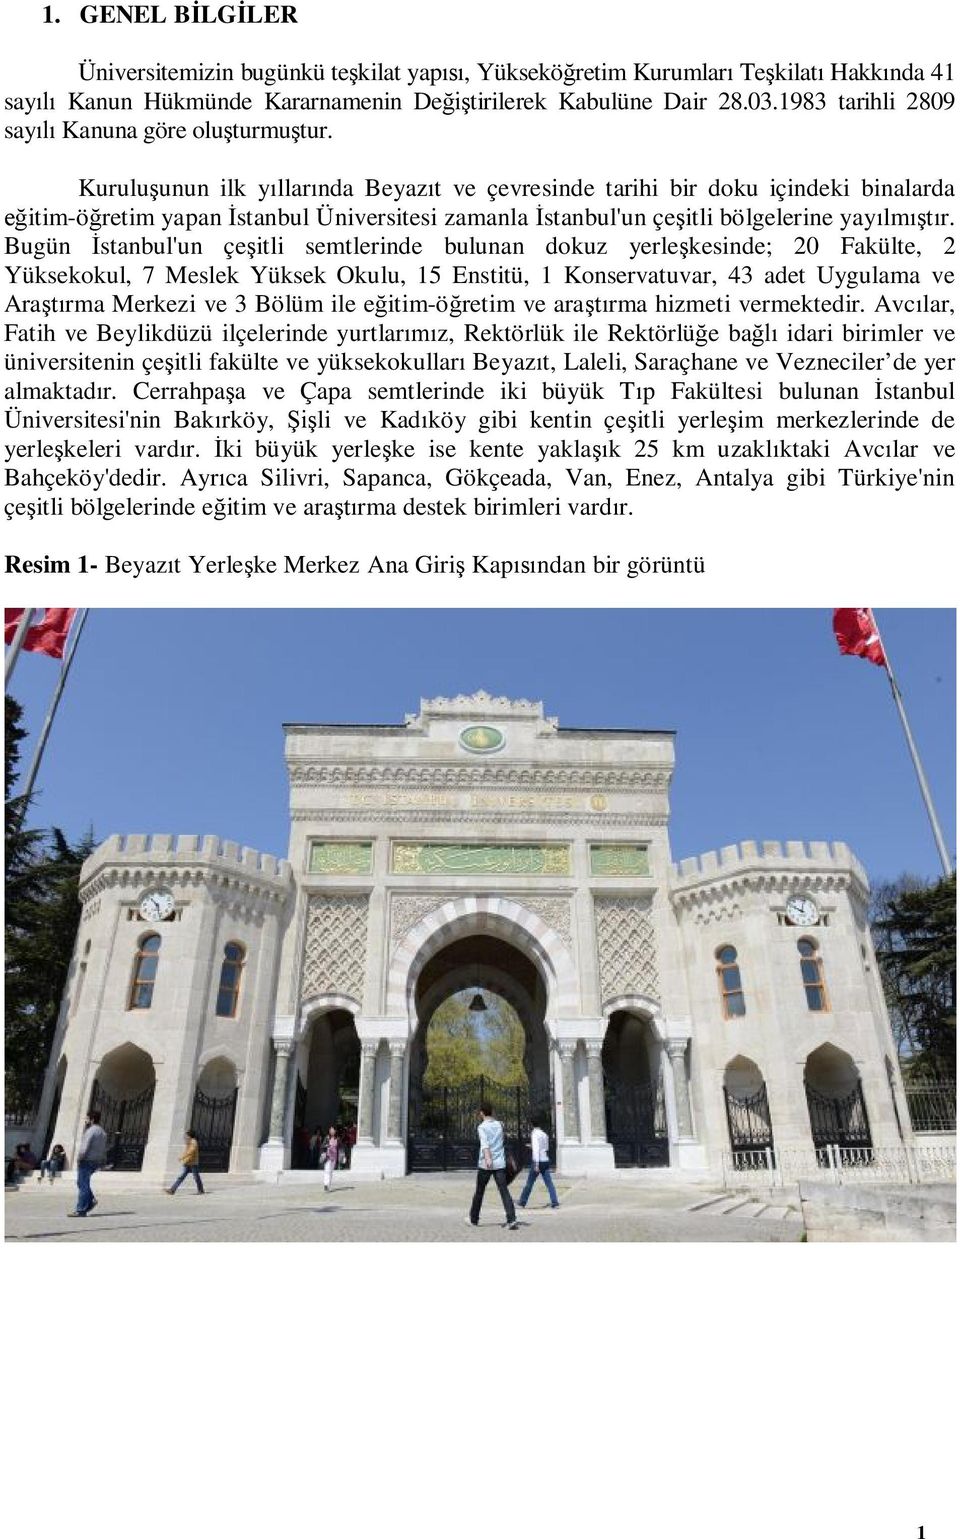 Kuruluşunun ilk yıllarında Beyazıt ve çevresinde tarihi bir doku içindeki binalarda eğitim-öğretim yapan İstanbul Üniversitesi zamanla İstanbul'un çeşitli bölgelerine yayılmıştır.